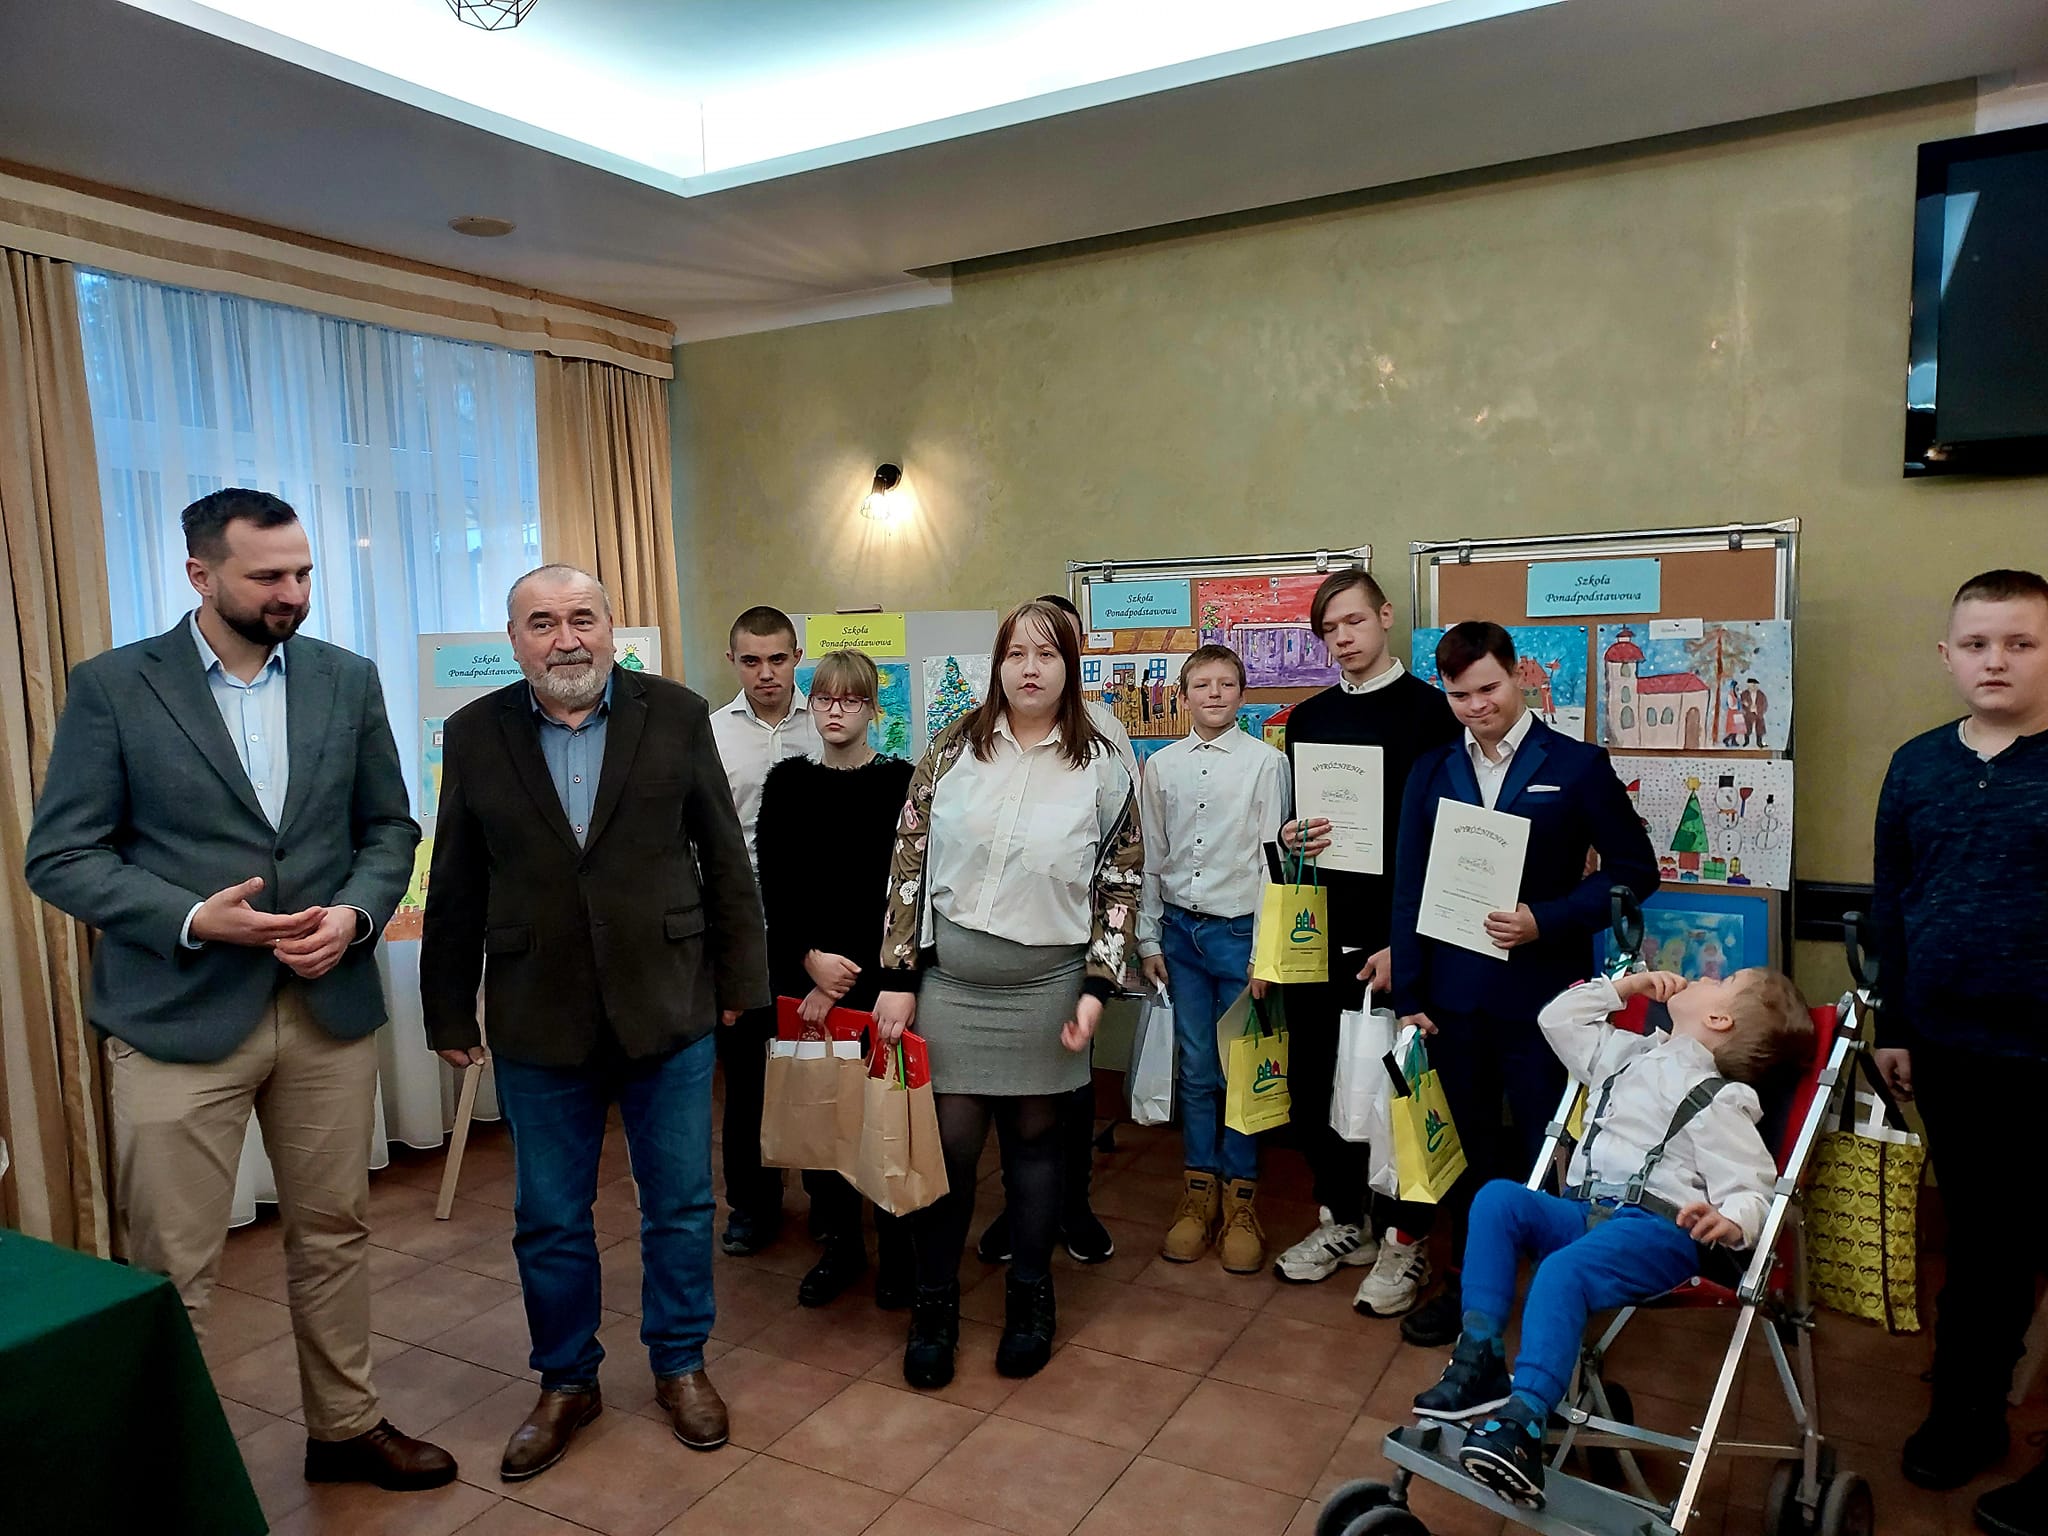   Дети из специальной школы и образовательного центра им. К. Макушиньского в Ольштыне с призами за работы, победившие в художественном конкурсе 